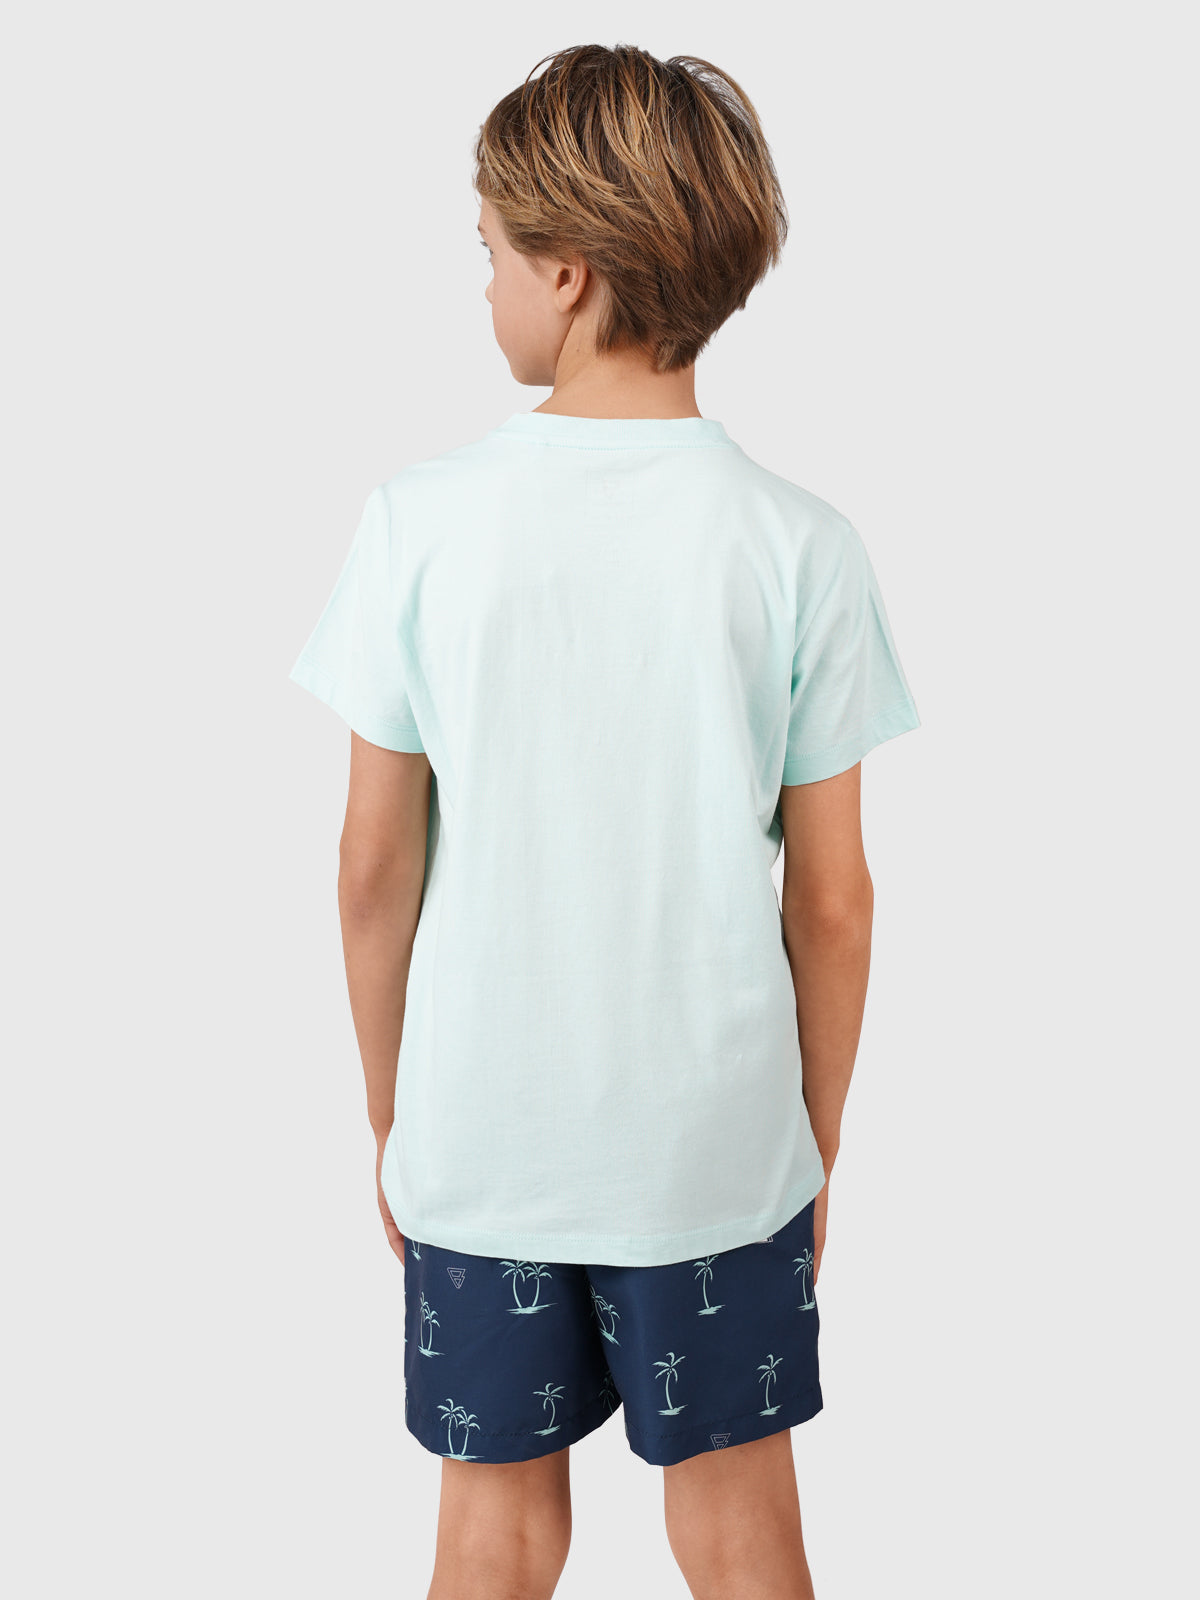 Jahny-Logo Jungen T-shirt | Mint